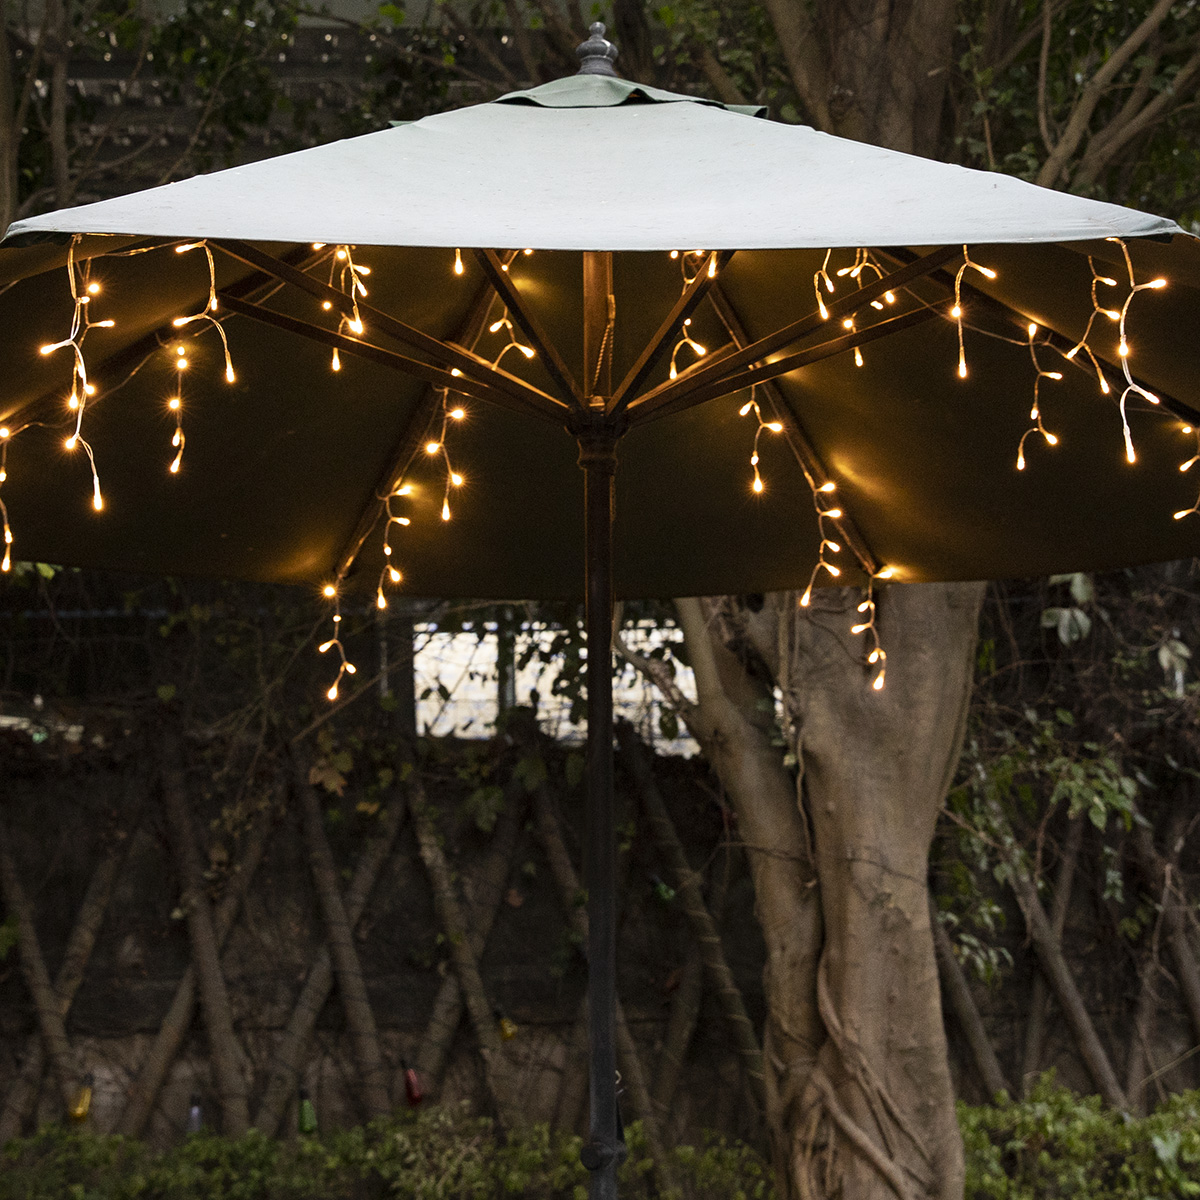 New Fashion Design for Lights Under Patio Umbrella - Solar Powered Umbrella Lights for Patio Umbrellas | ZHONGXIN – Zhongxin